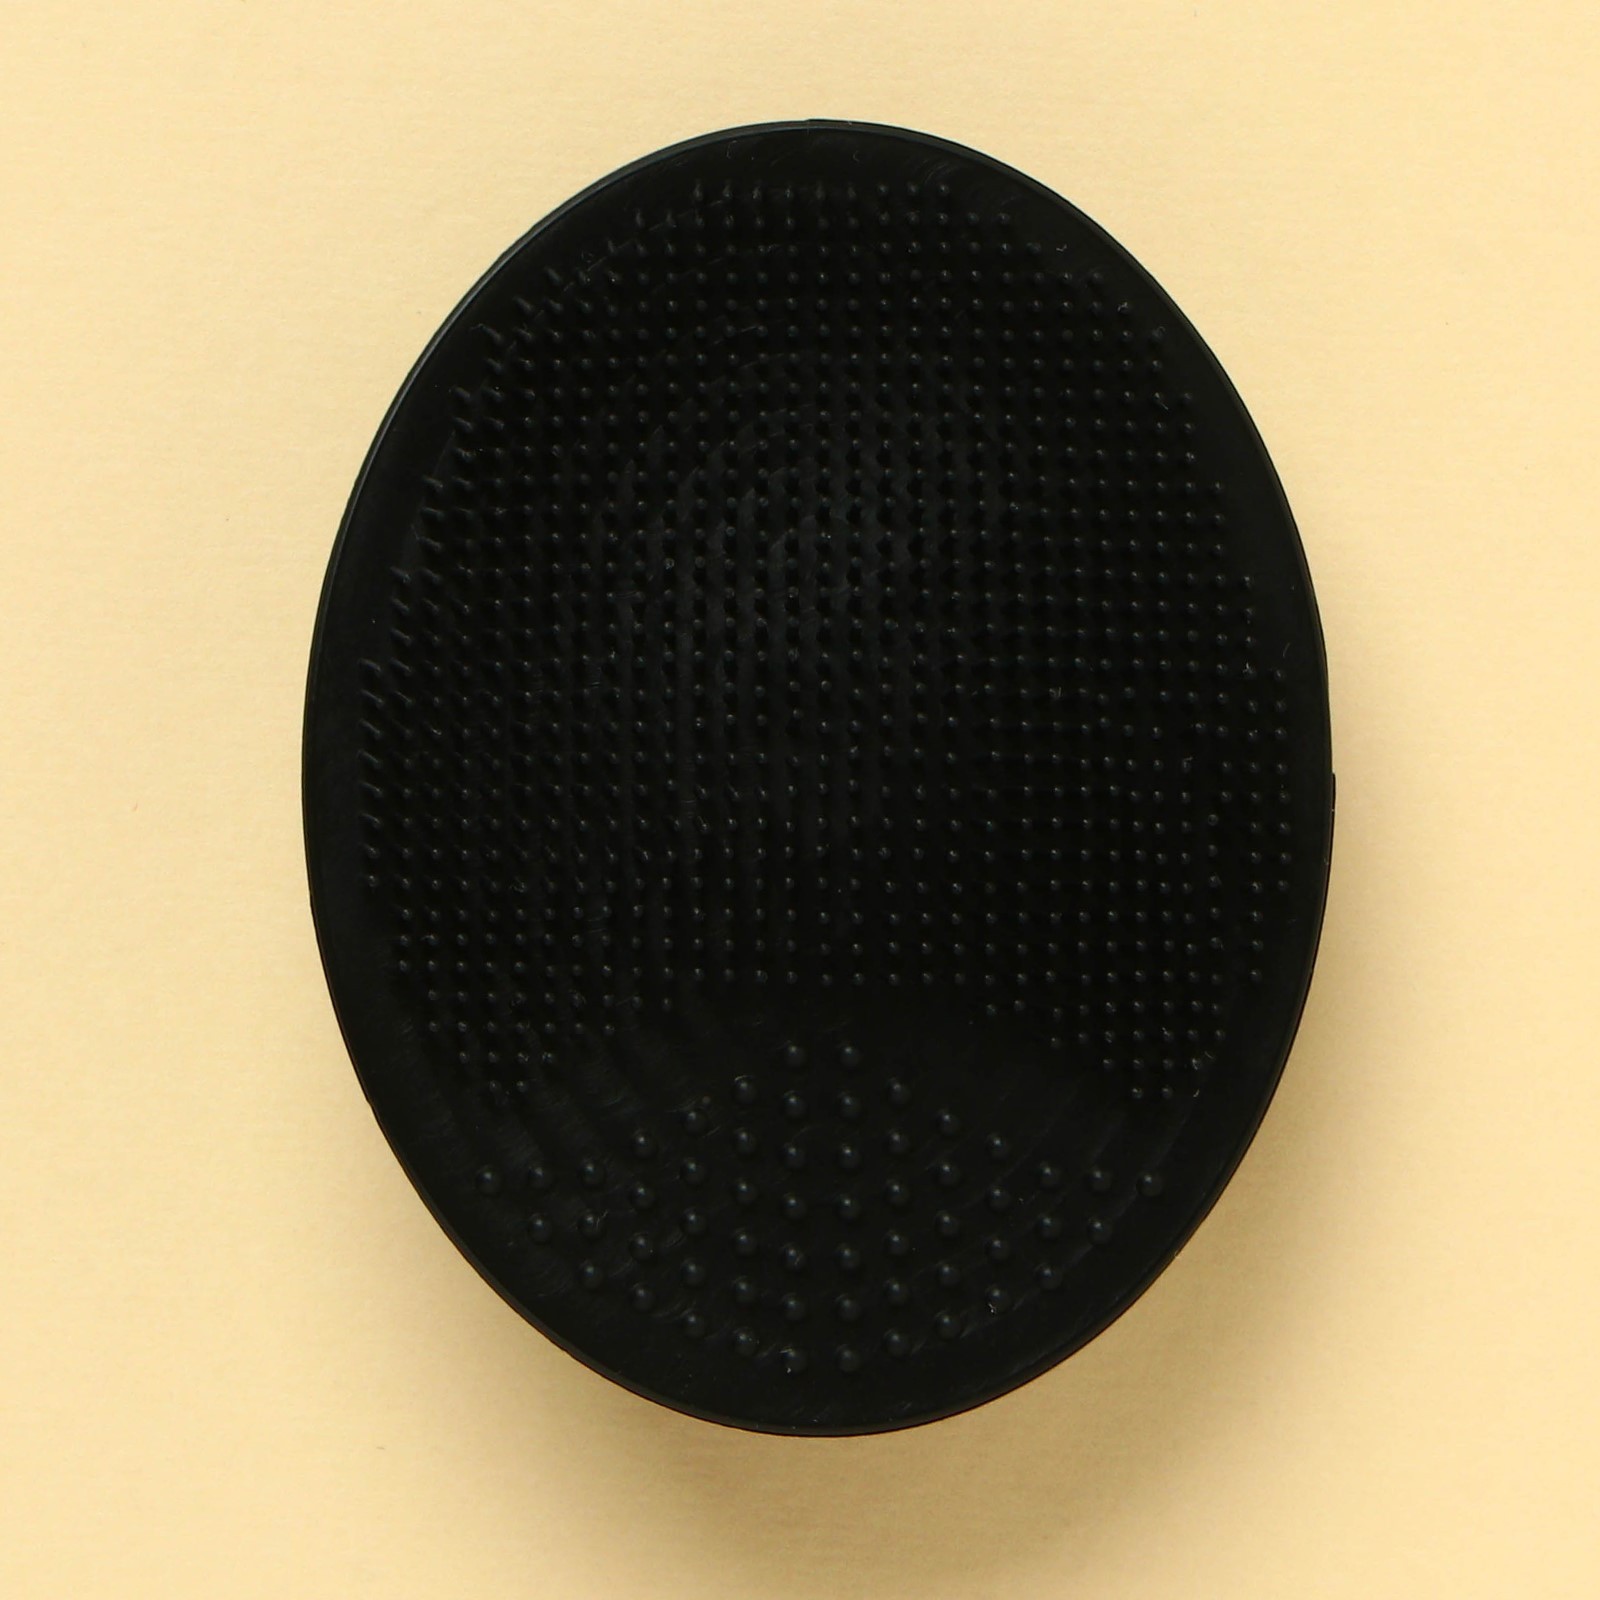 Спонж Art beauty, щёточка для умывания черная, 10,5 х 15 см, 1 шт спонж для умывания art beauty аниме силиконовый в пакете 6 5 х 5 см